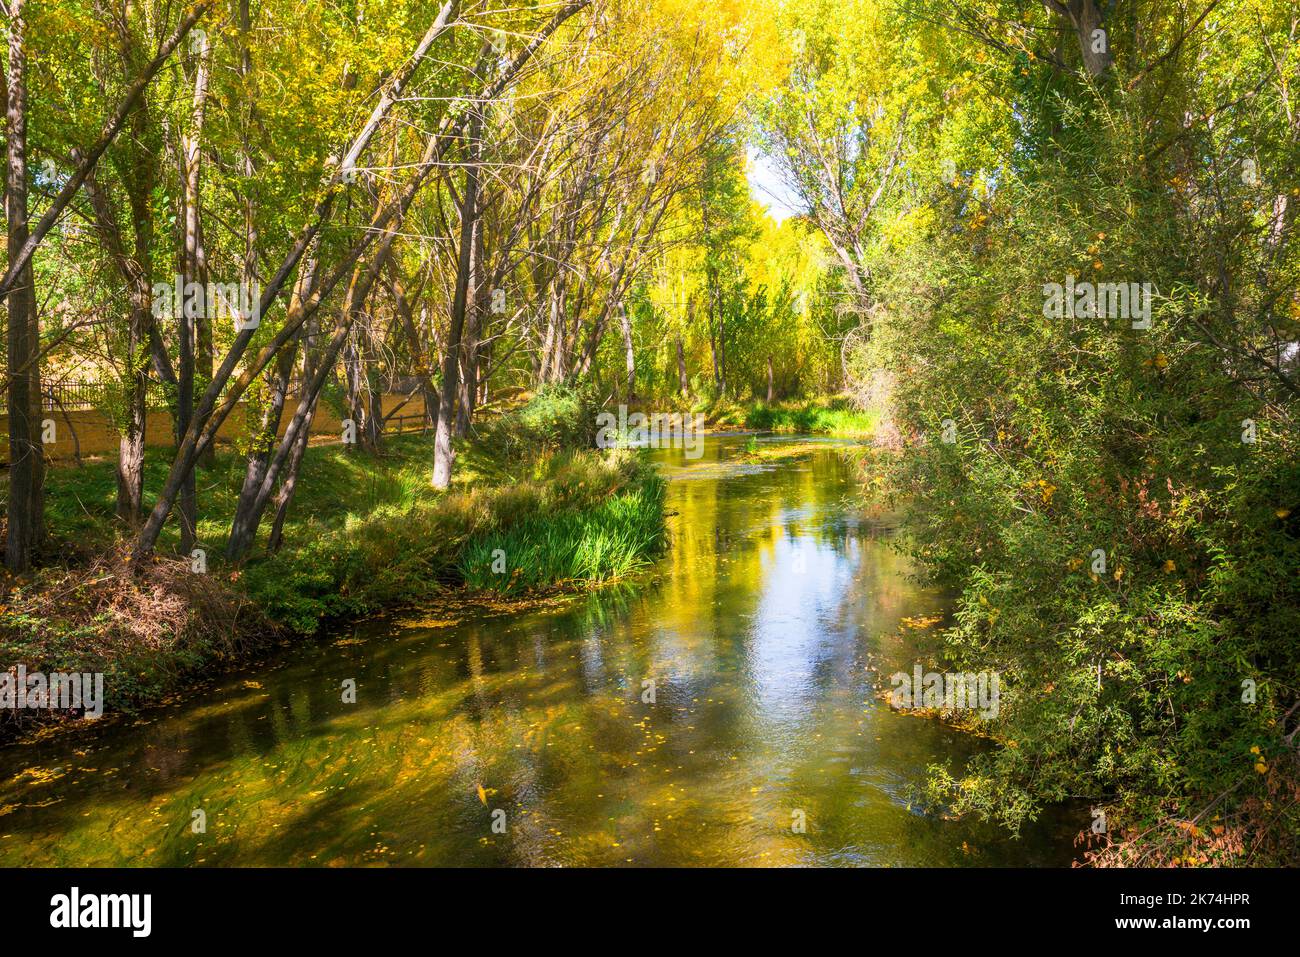 River Duraton. Burgomillodo, Segovia province, Castilla Leon, Spain. Stock Photo